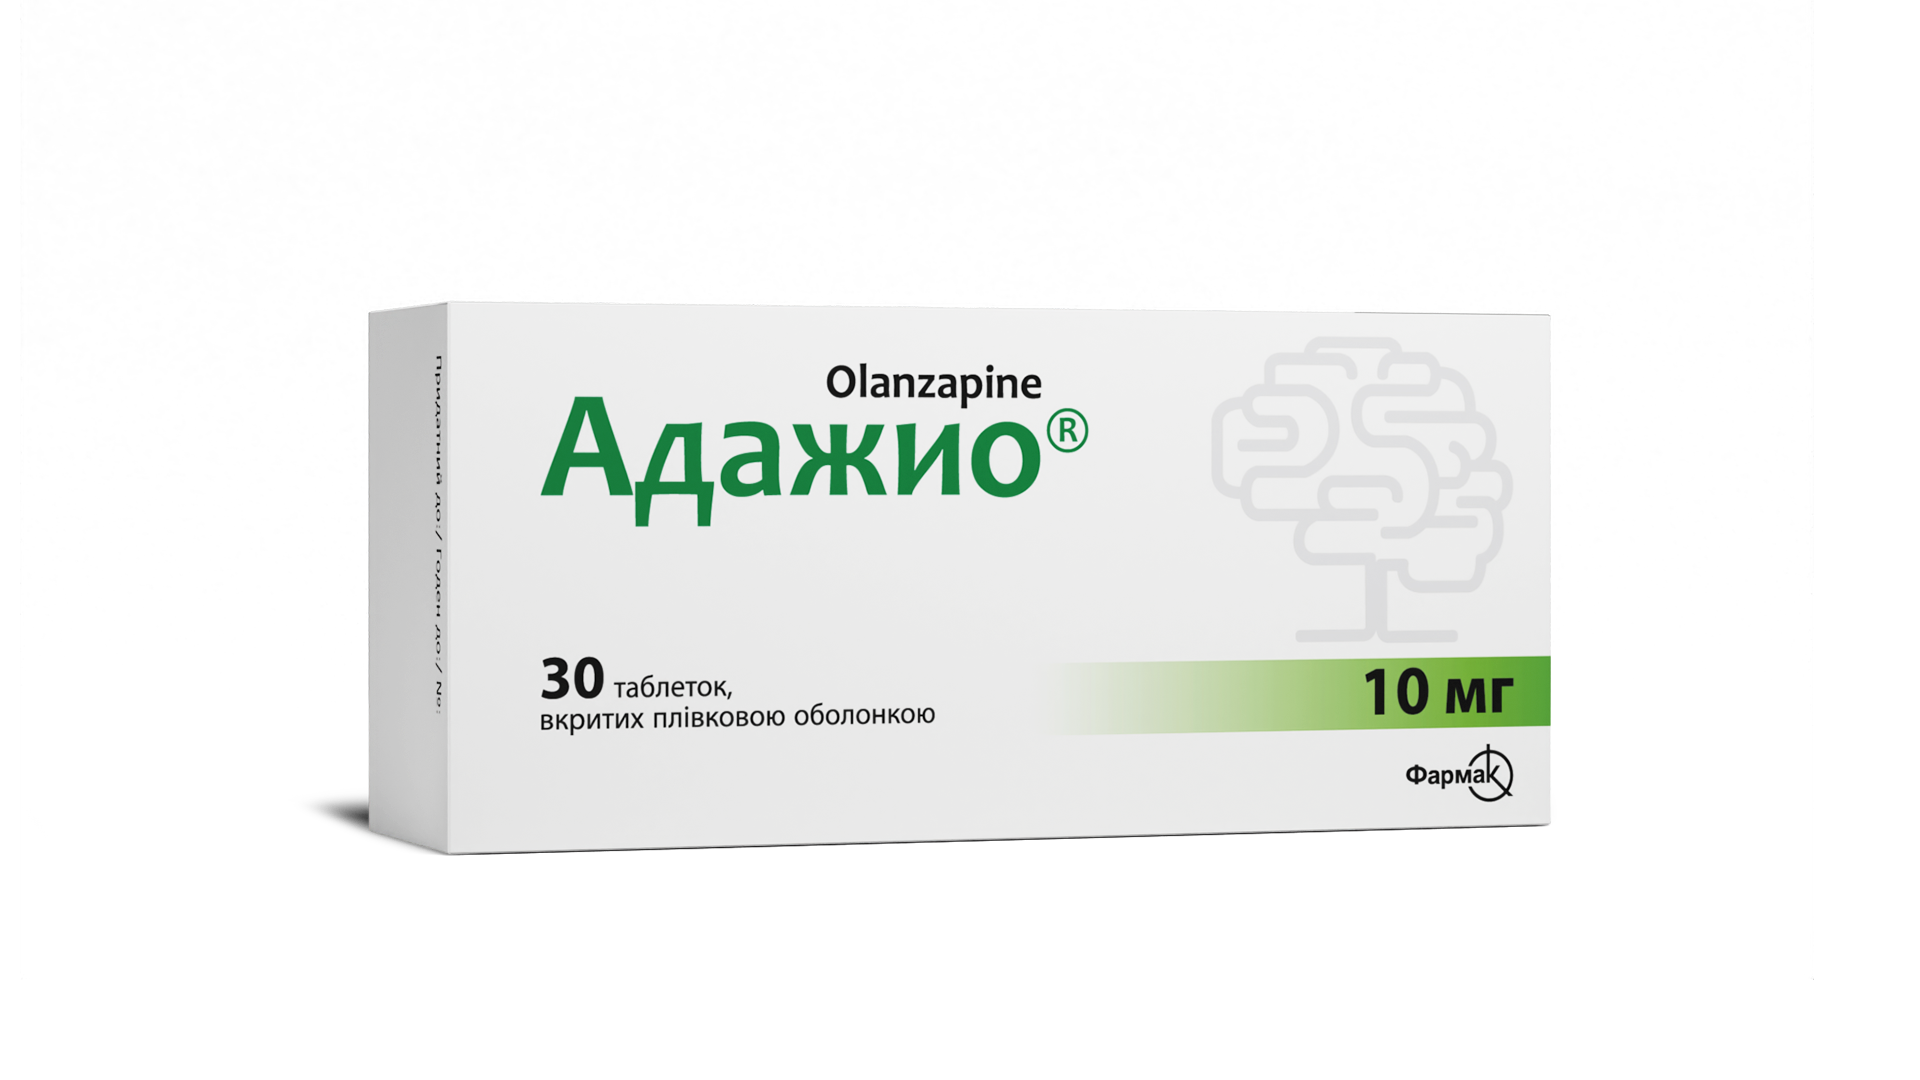 Адажио® 10 мг (1)